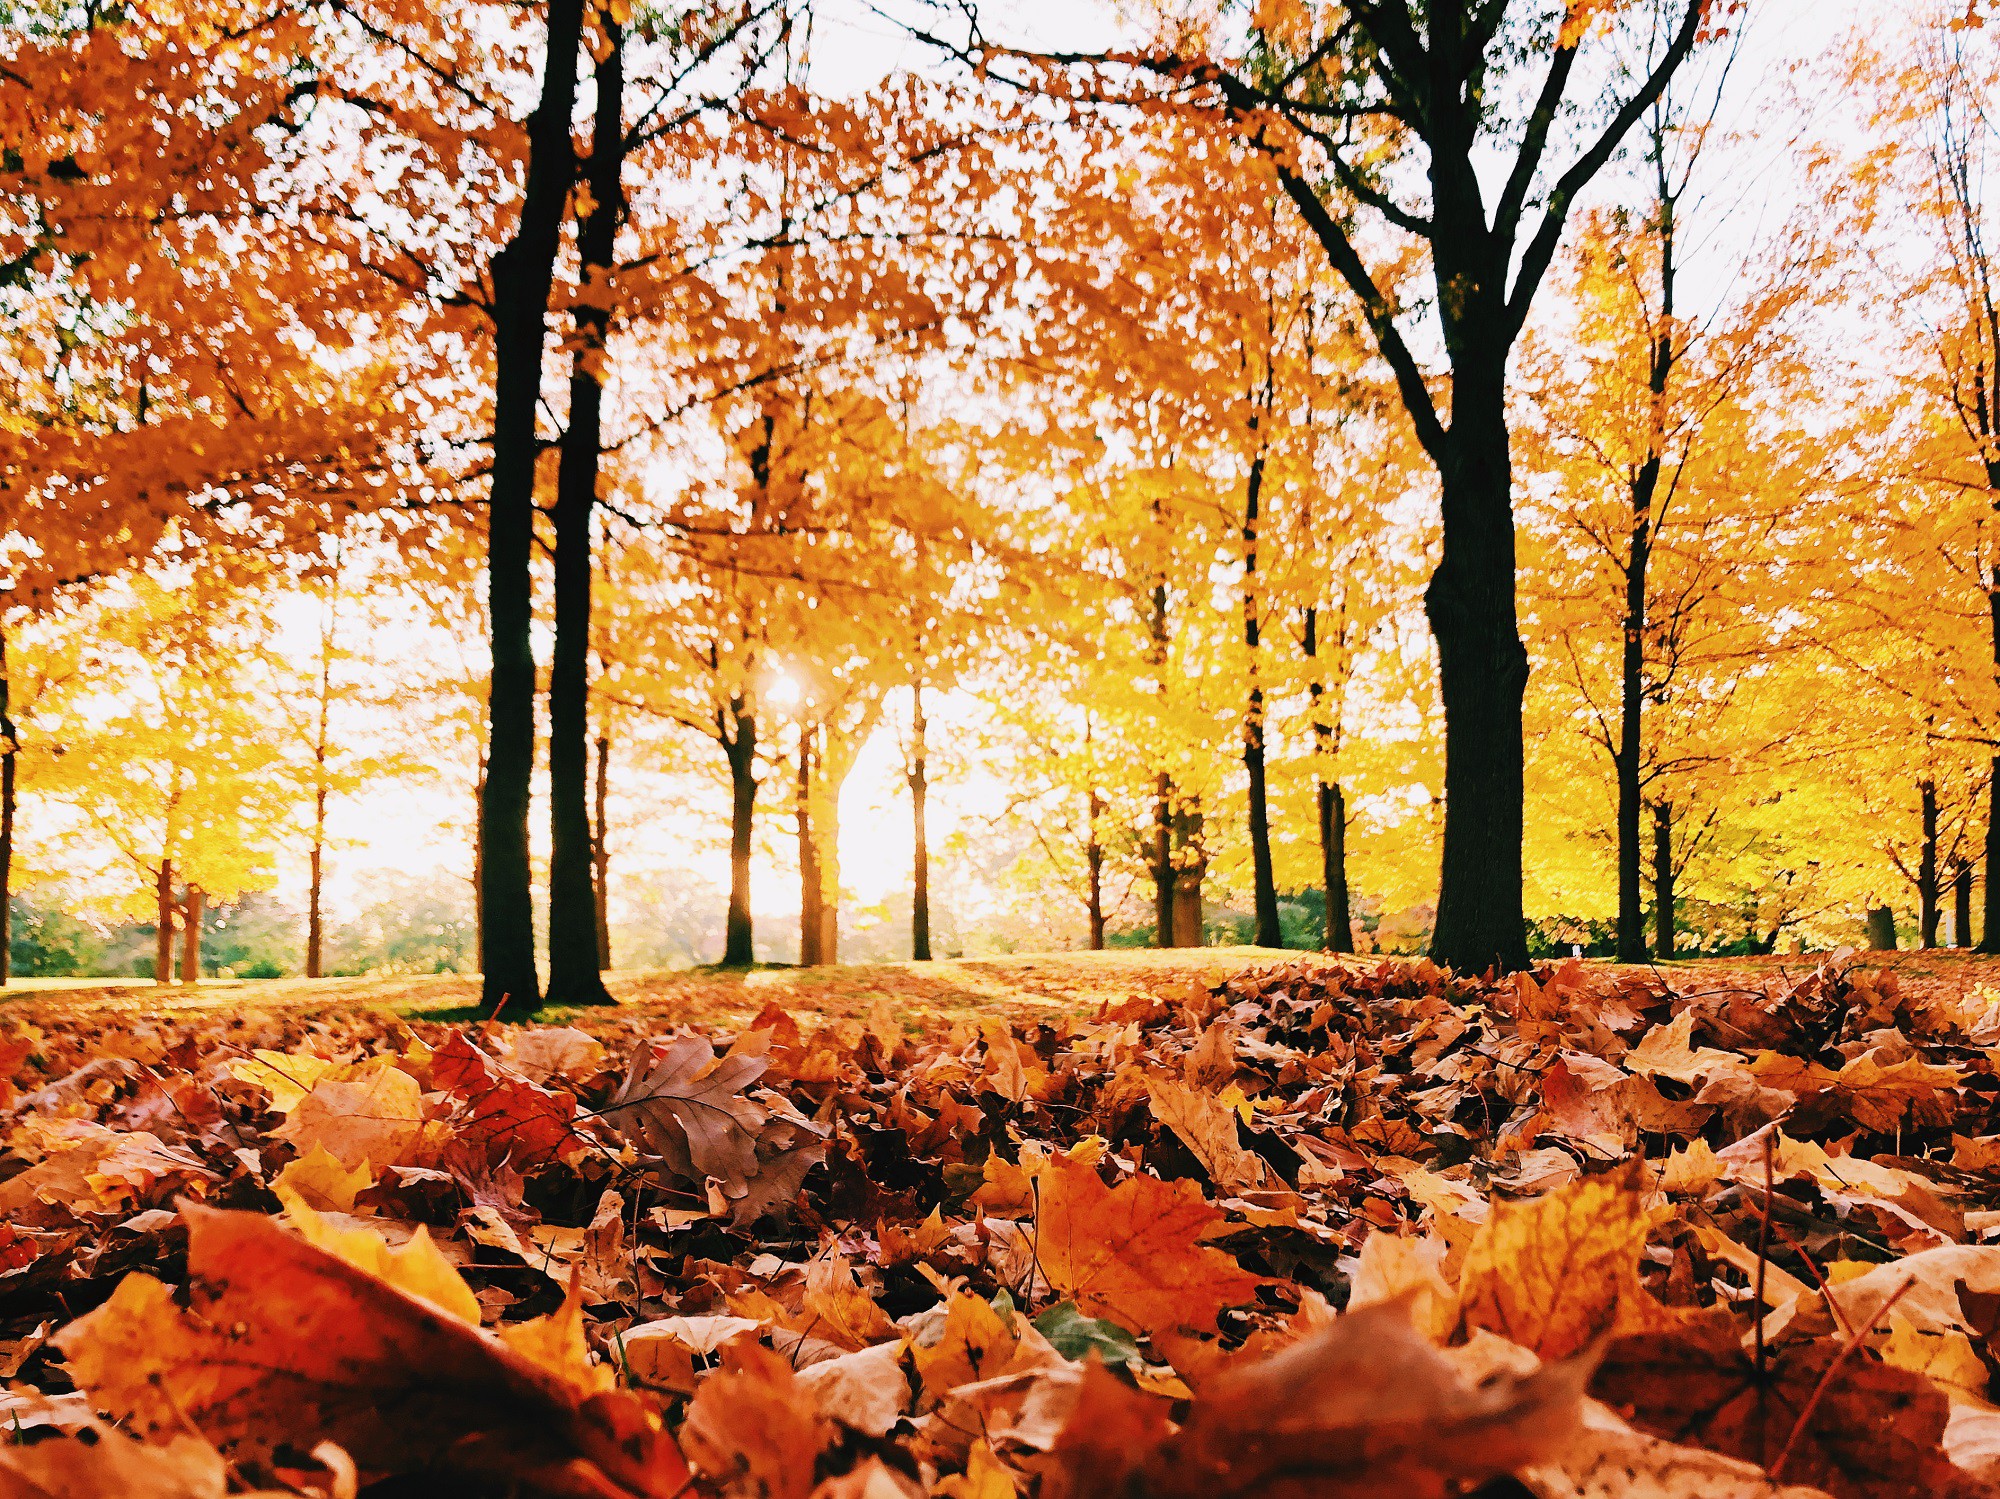 Mùa thu là mùa của lá phong, khi chúng bắt đầu chuyển sang màu đỏ rực rỡ. Hãy thưởng thức những hình ảnh tuyệt đẹp về lá phong mùa thu để đắm mình trong sắc màu tự nhiên và tình cảm của mùa thu.